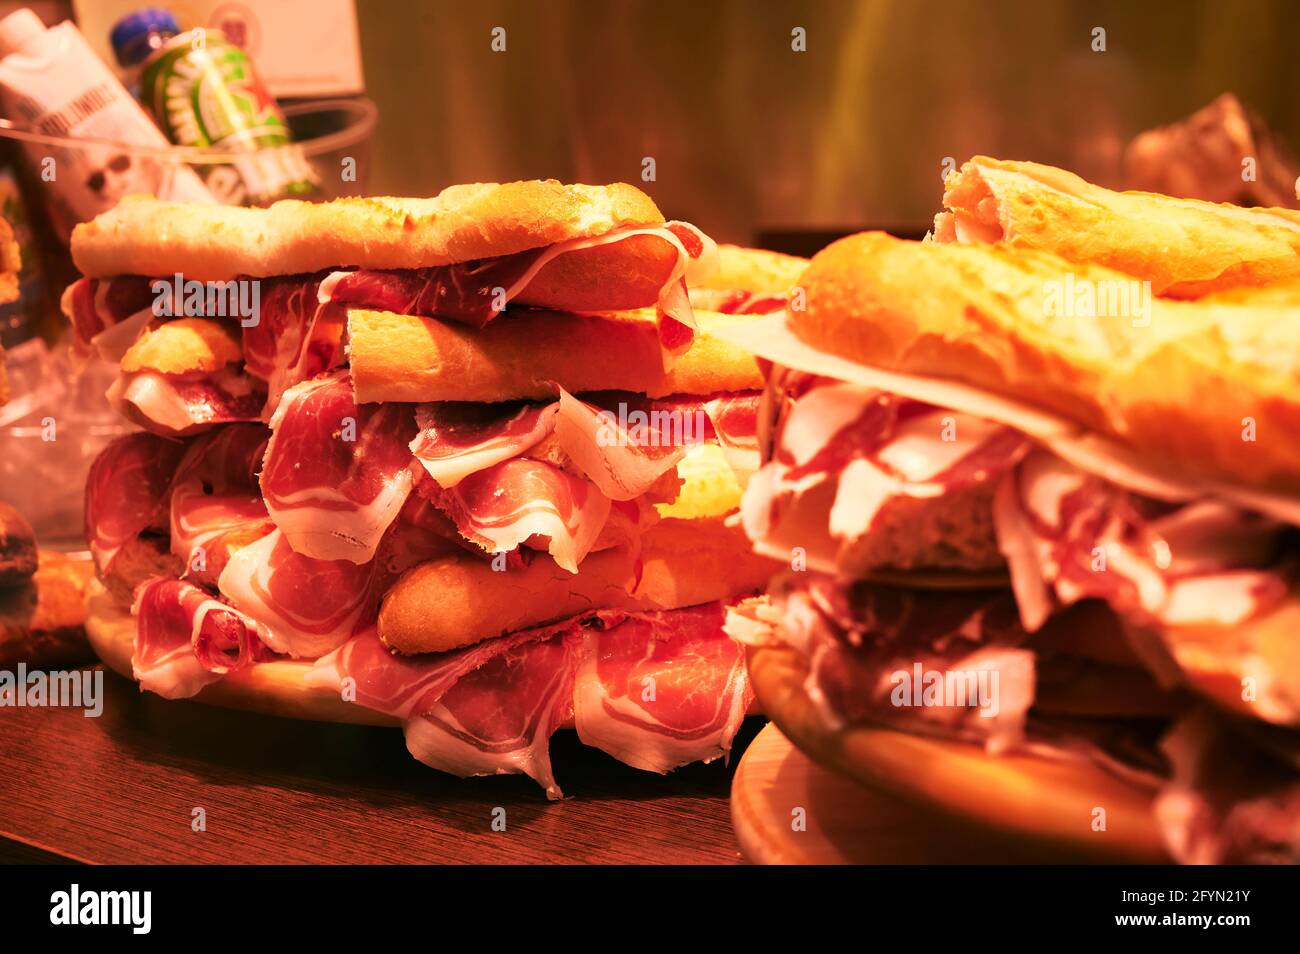 Une pile de sandwichs au jambon serrano iberico est exposée dans une boutique de sandwichs locale de Bilbao, Gascogne, pays basque, Espagne Banque D'Images